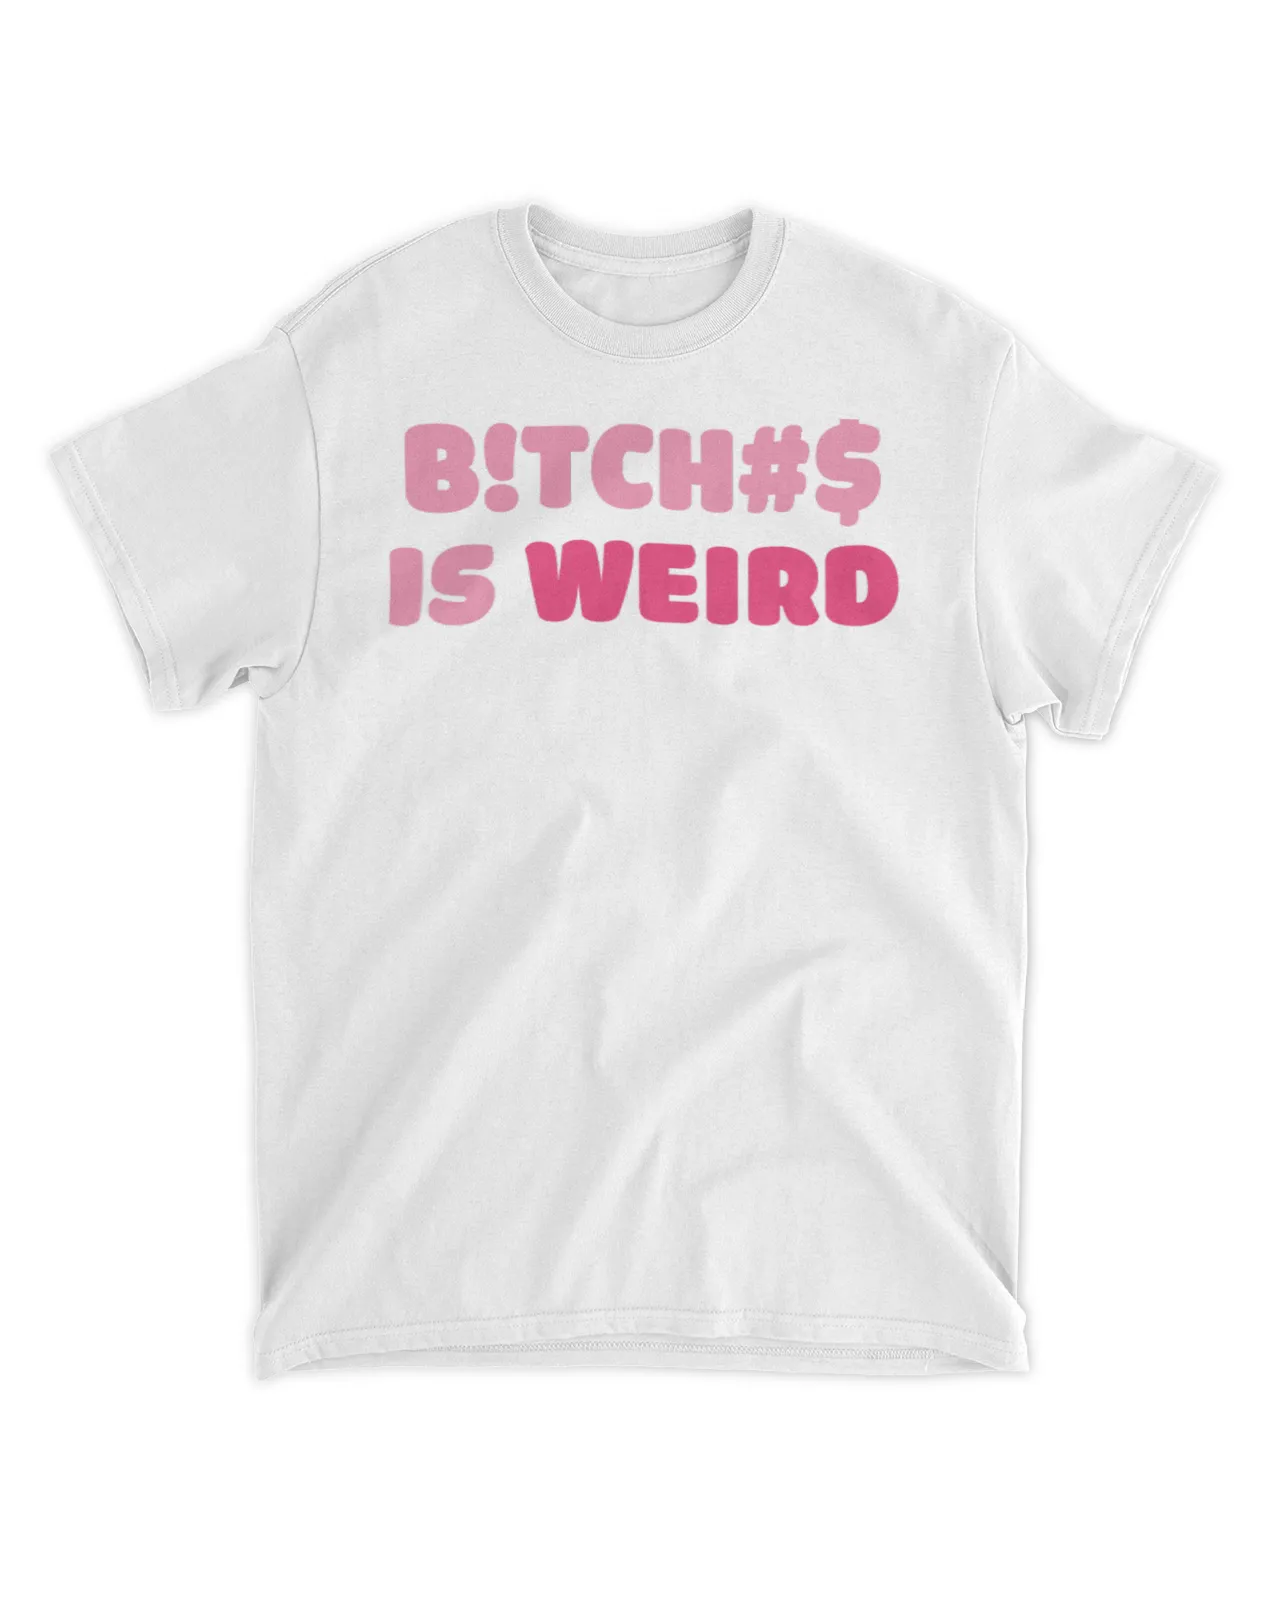  Bitches is weird shirt